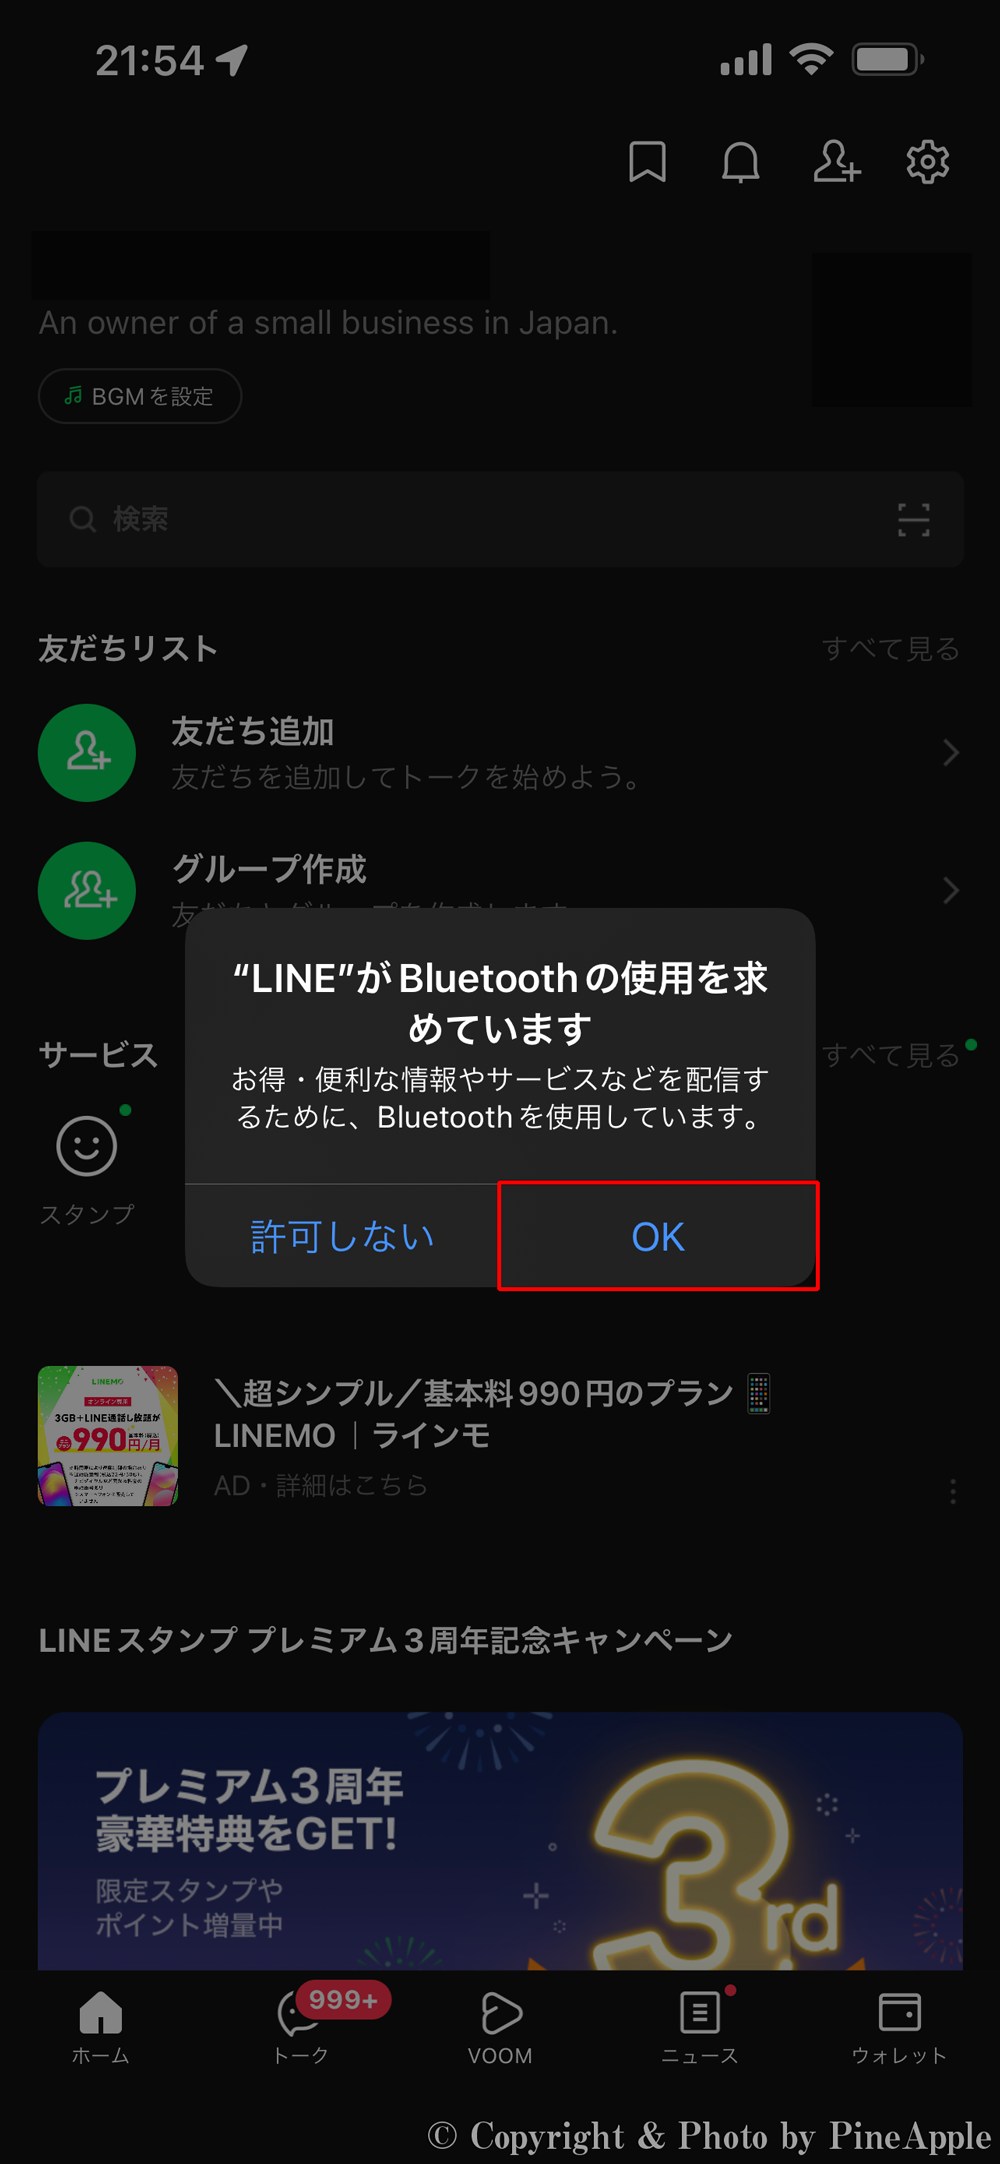 LINE：""LINE" が Bluetooth の使用を求めています" のポップアップが表示されたら、[許可] をタップ